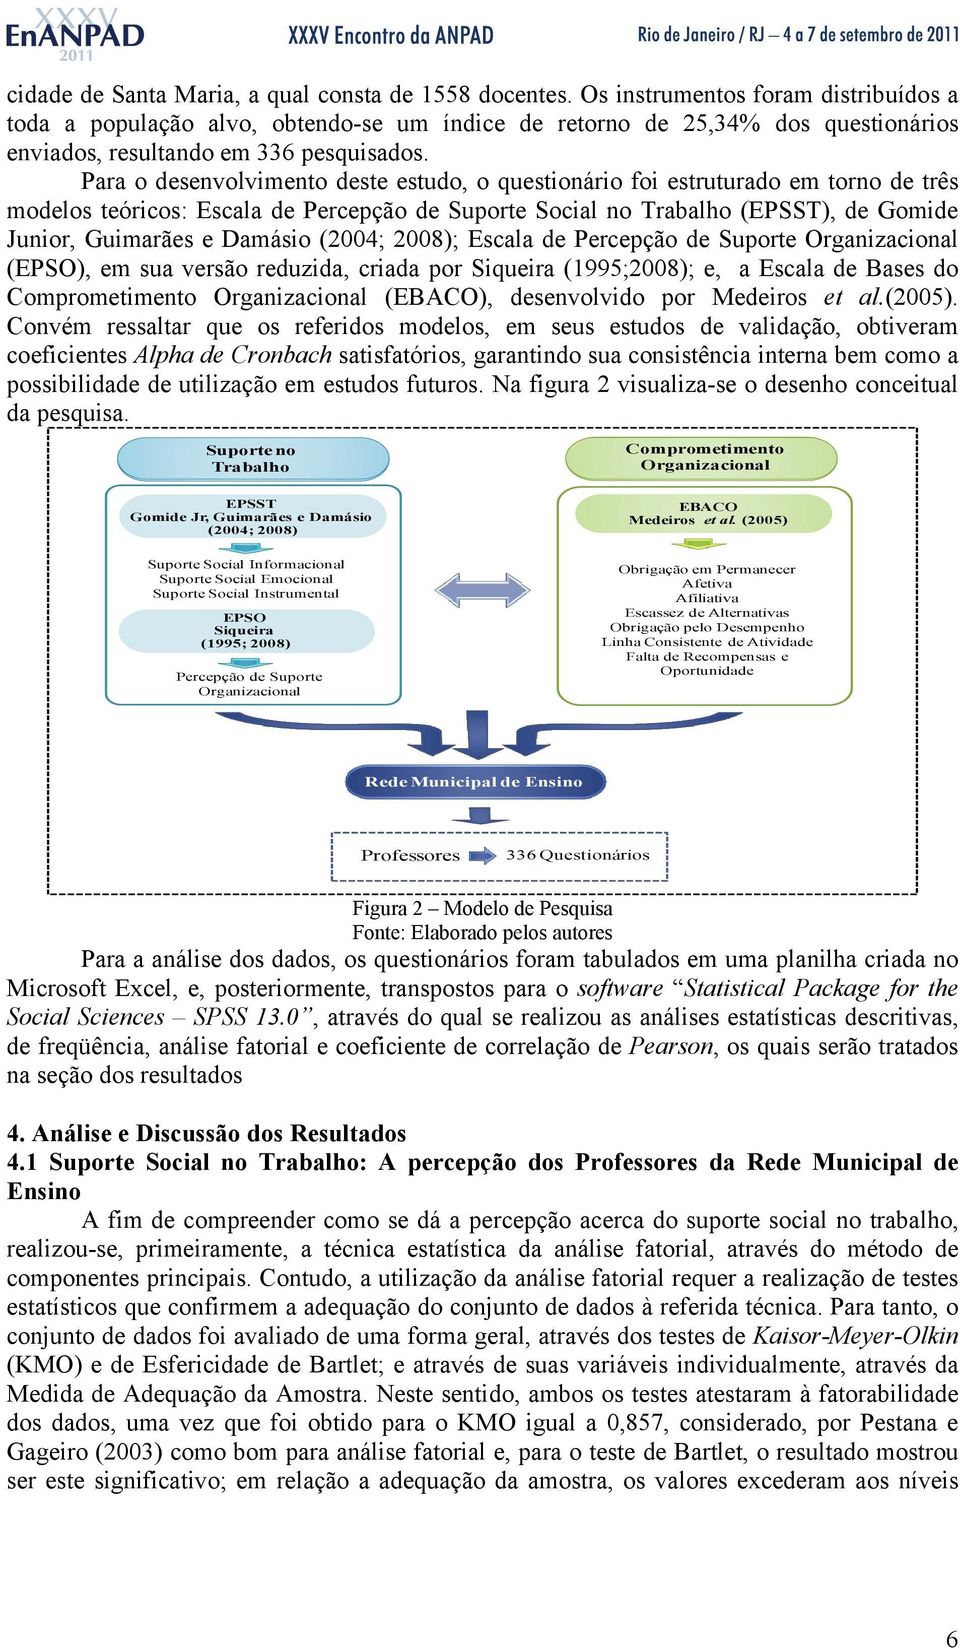 Para o desenvolvimento deste estudo, o questionário foi estruturado em torno de três modelos teóricos: Escala de Percepção de Suporte Social no Trabalho (EPSST), de Gomide Junior, Guimarães e Damásio